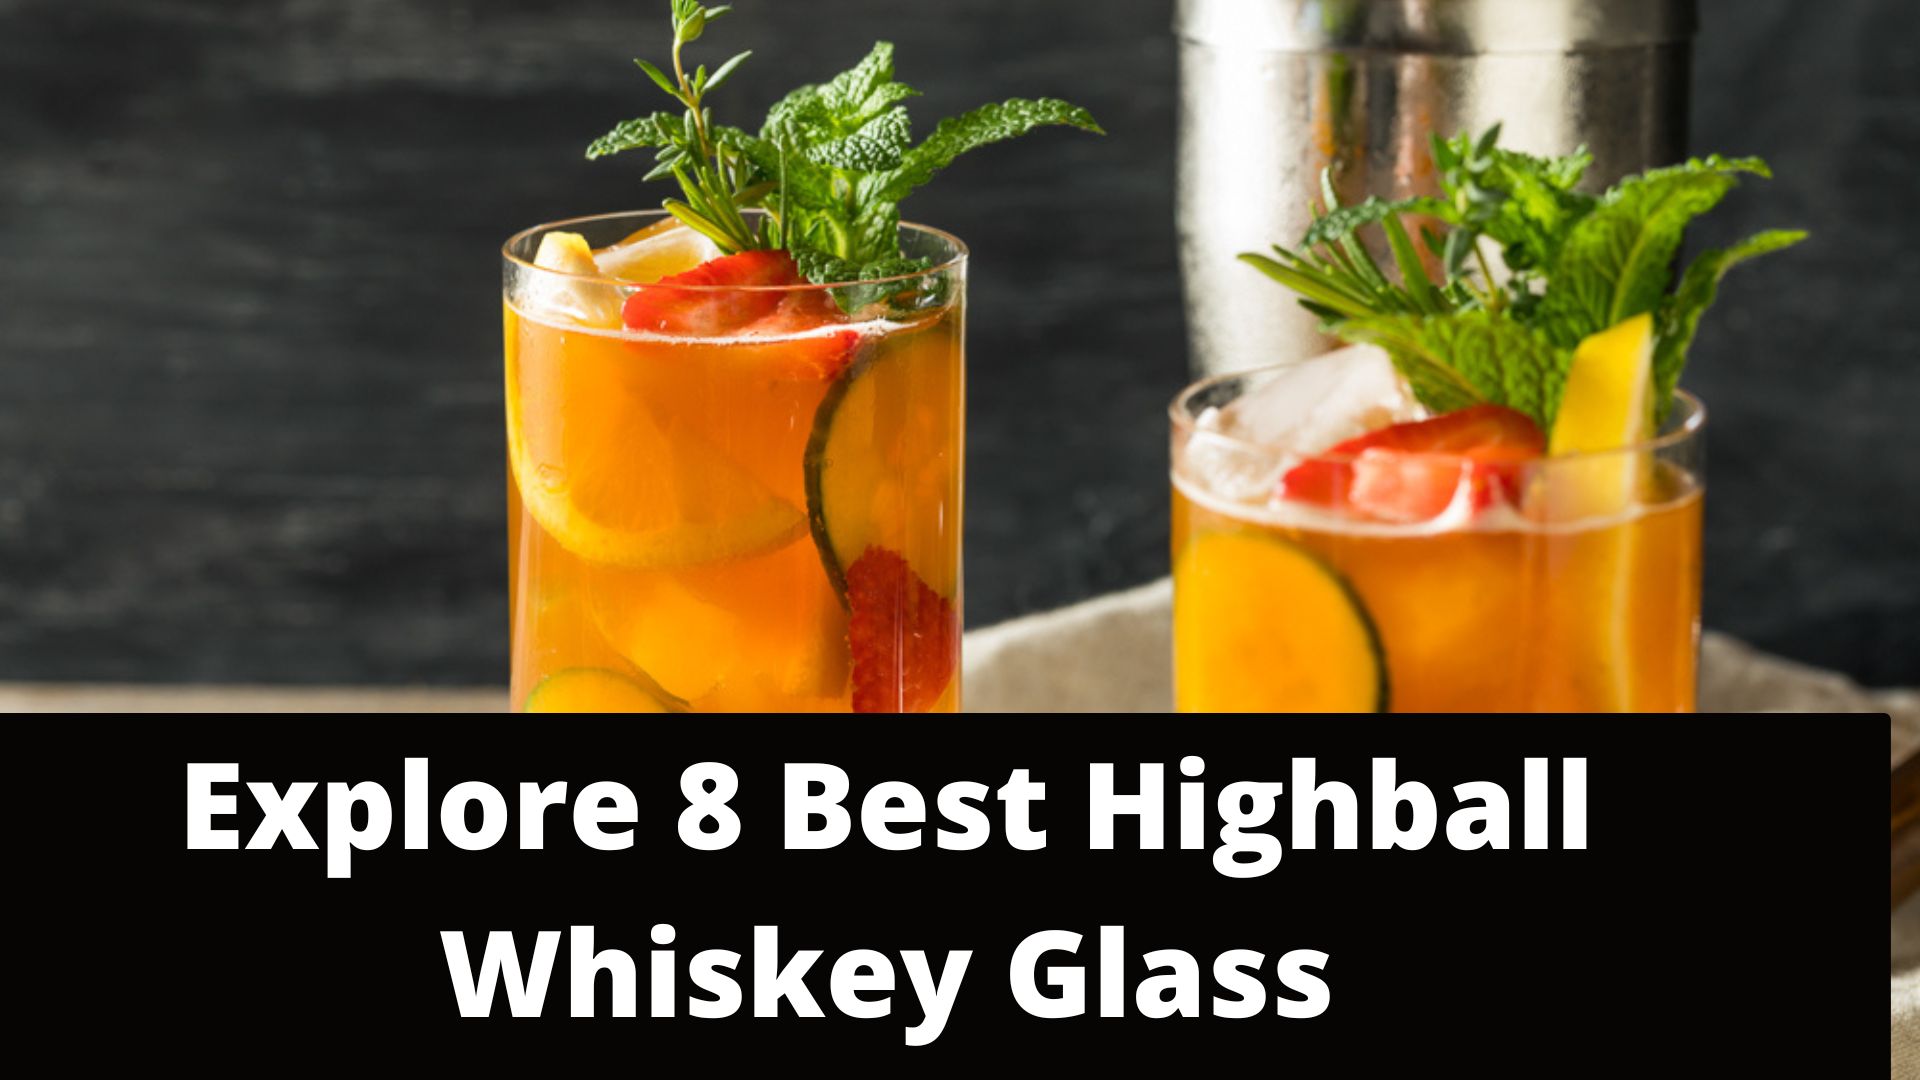 15 Best ScExplore 8 Best Highball Whiskey Glassotch & Whiskey Glasses